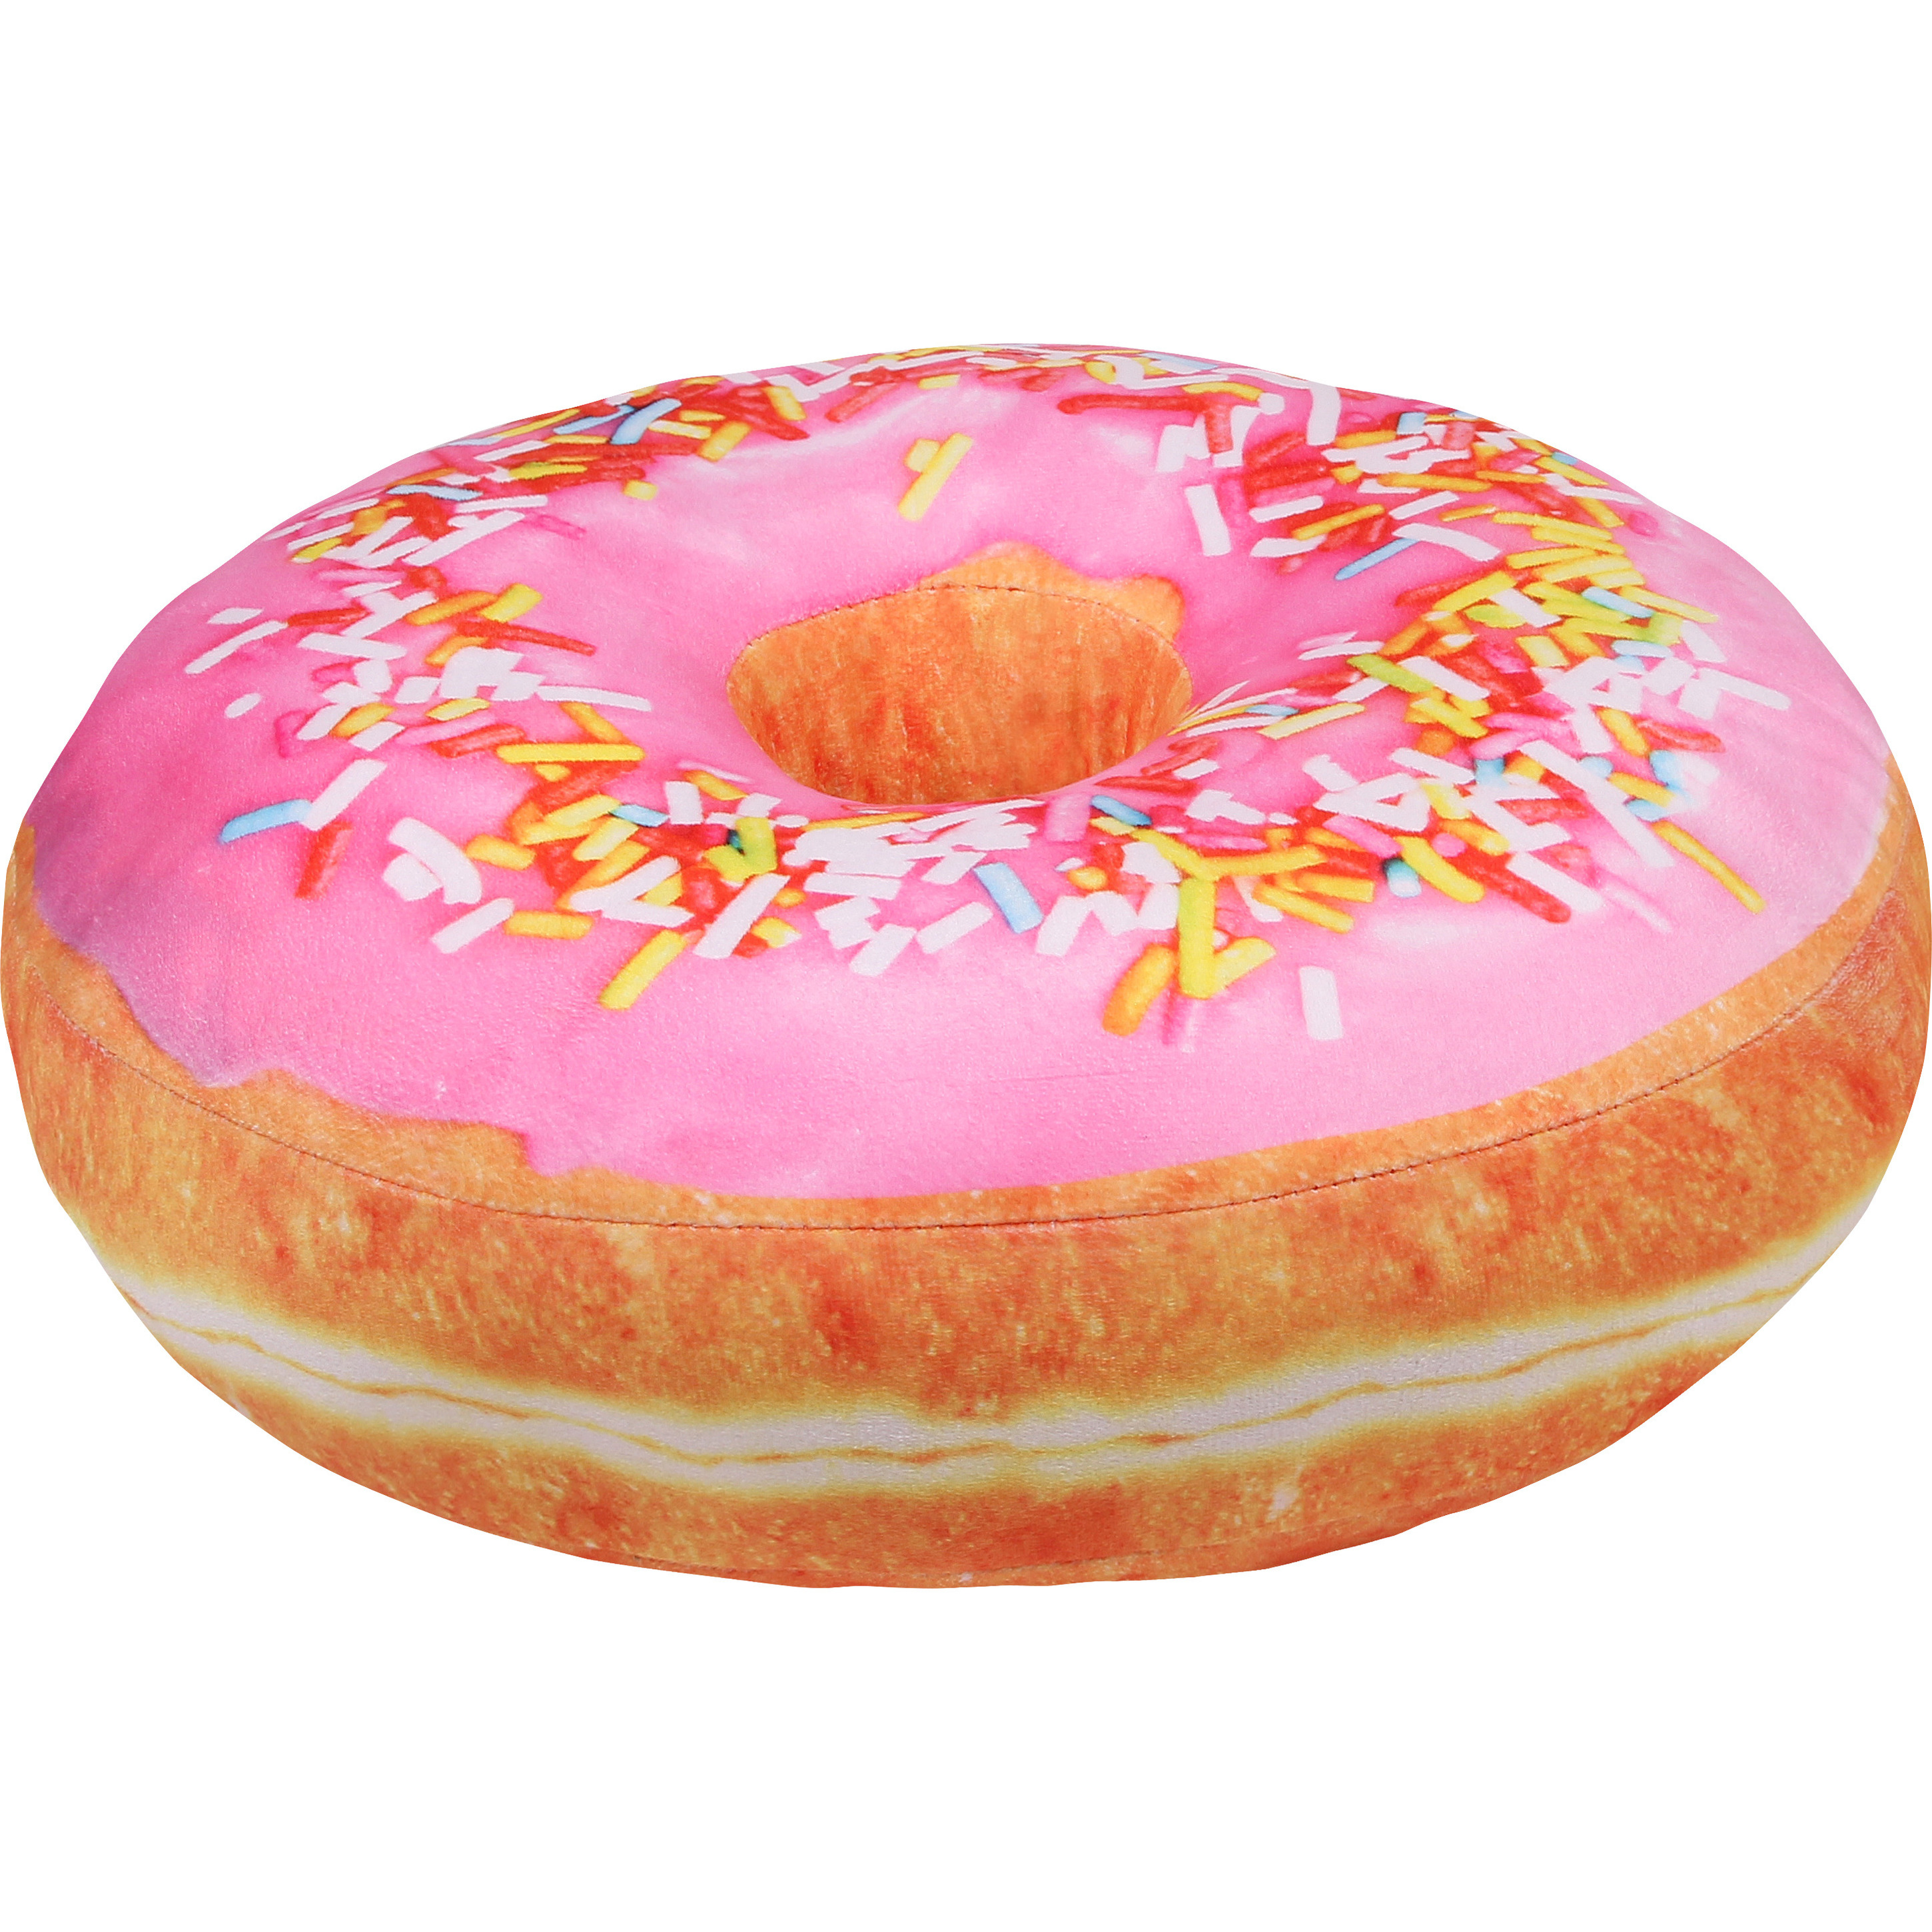 Pluche sprinkels donut kussen lichtroze 40 cm